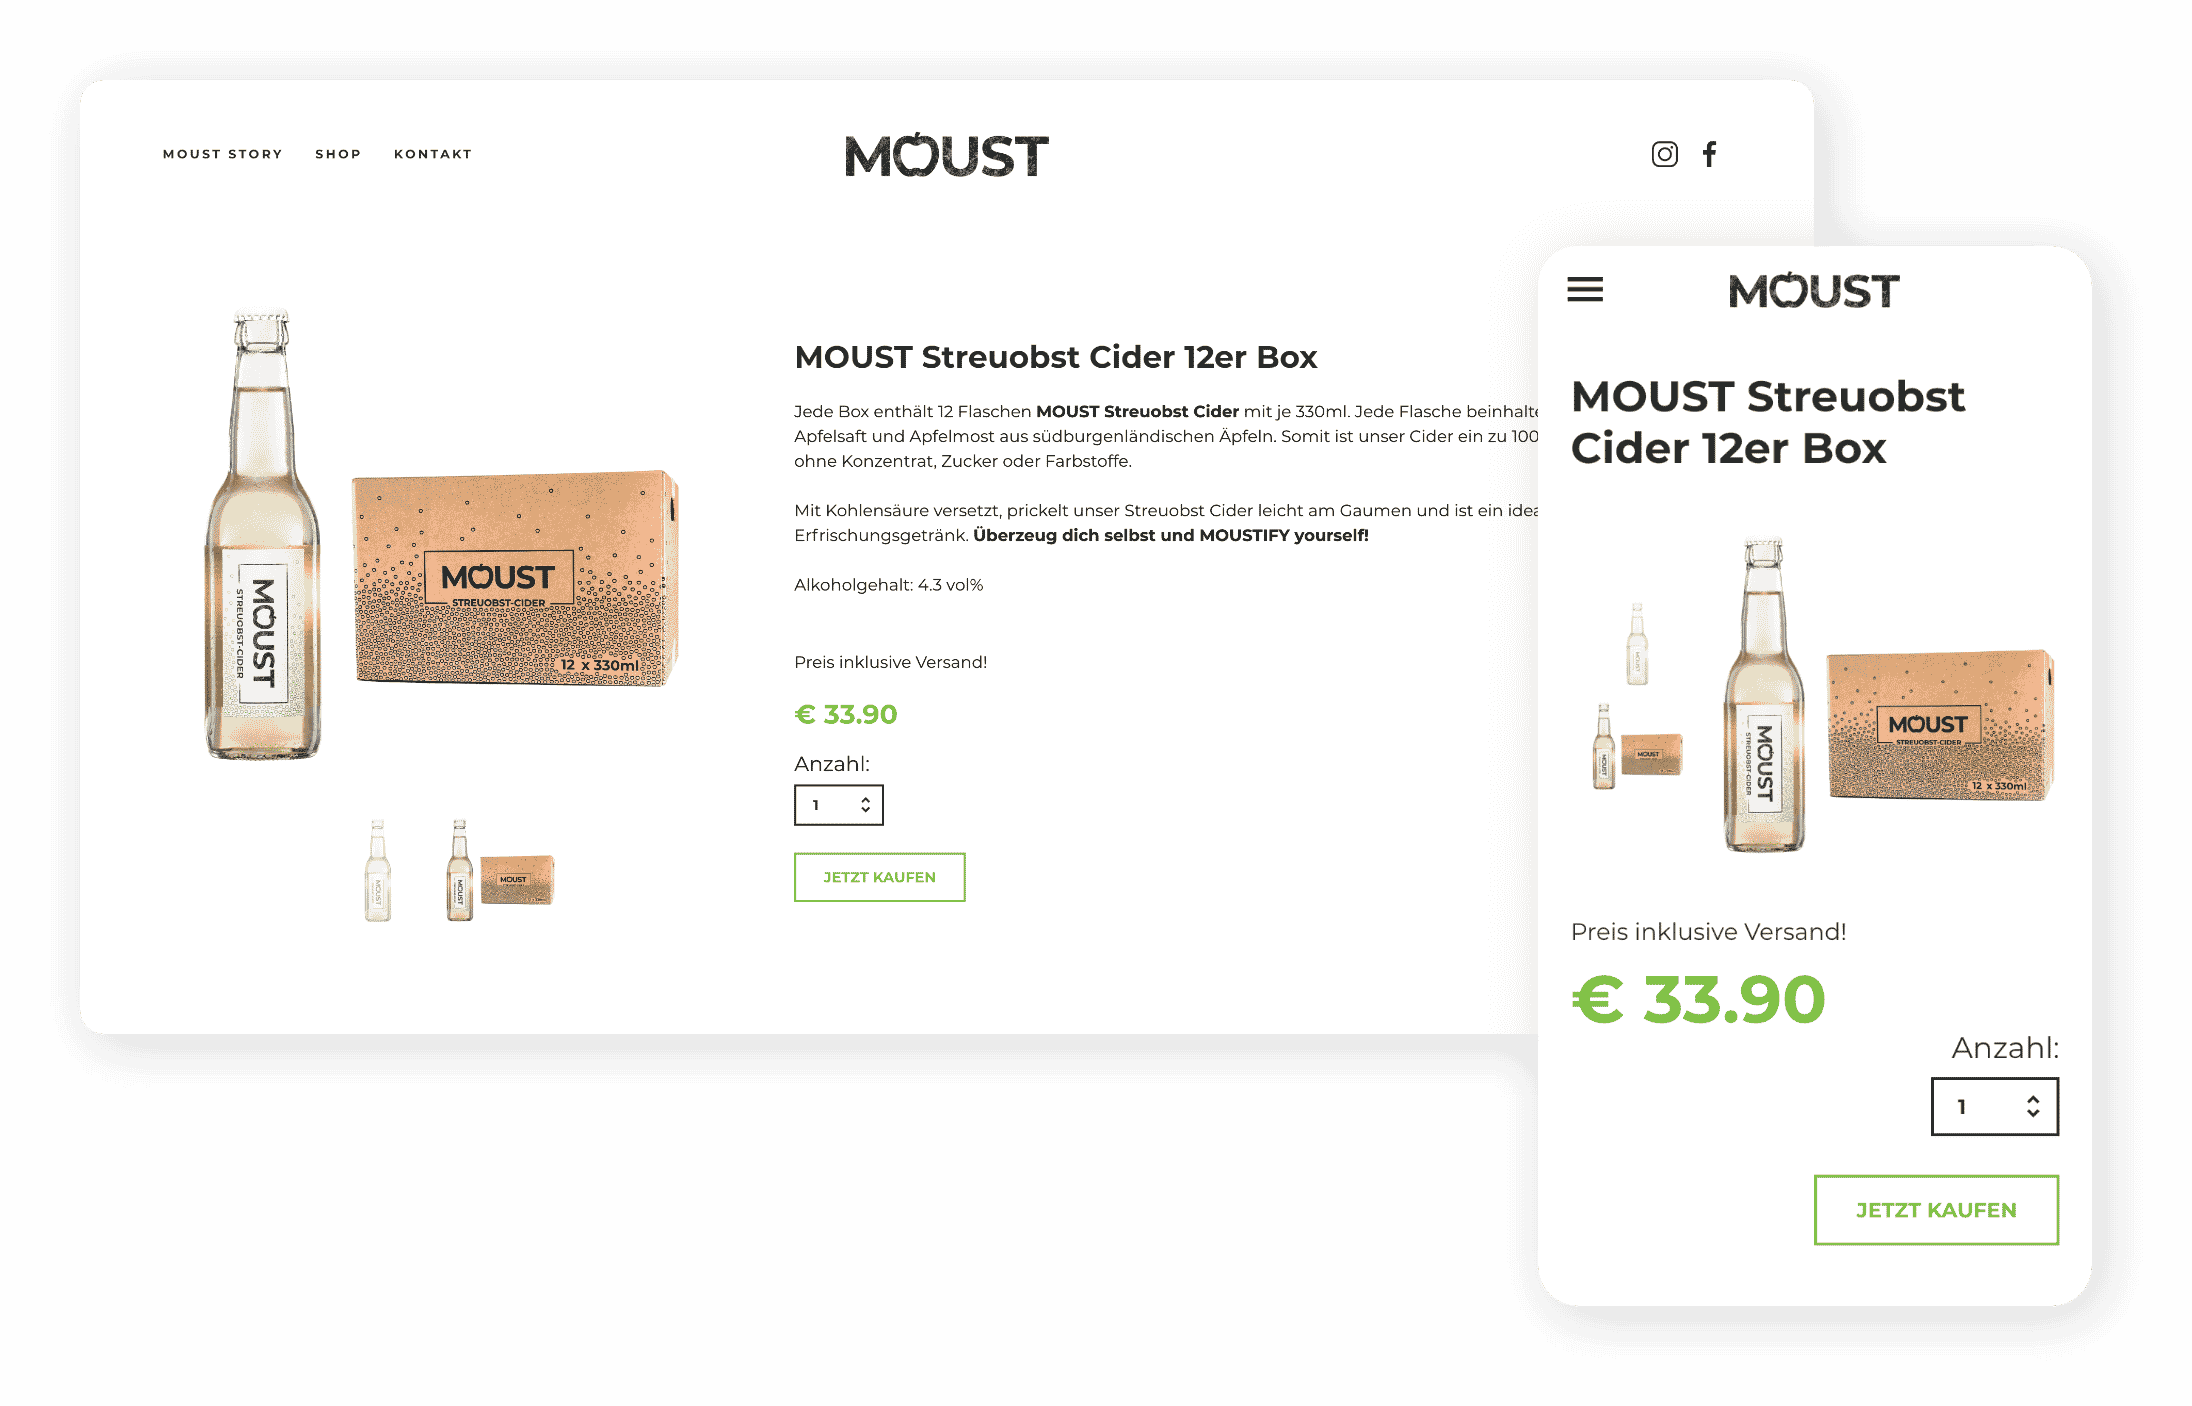 MOUST Streuobstcider Online Shop Produkt Desktop und Mobile